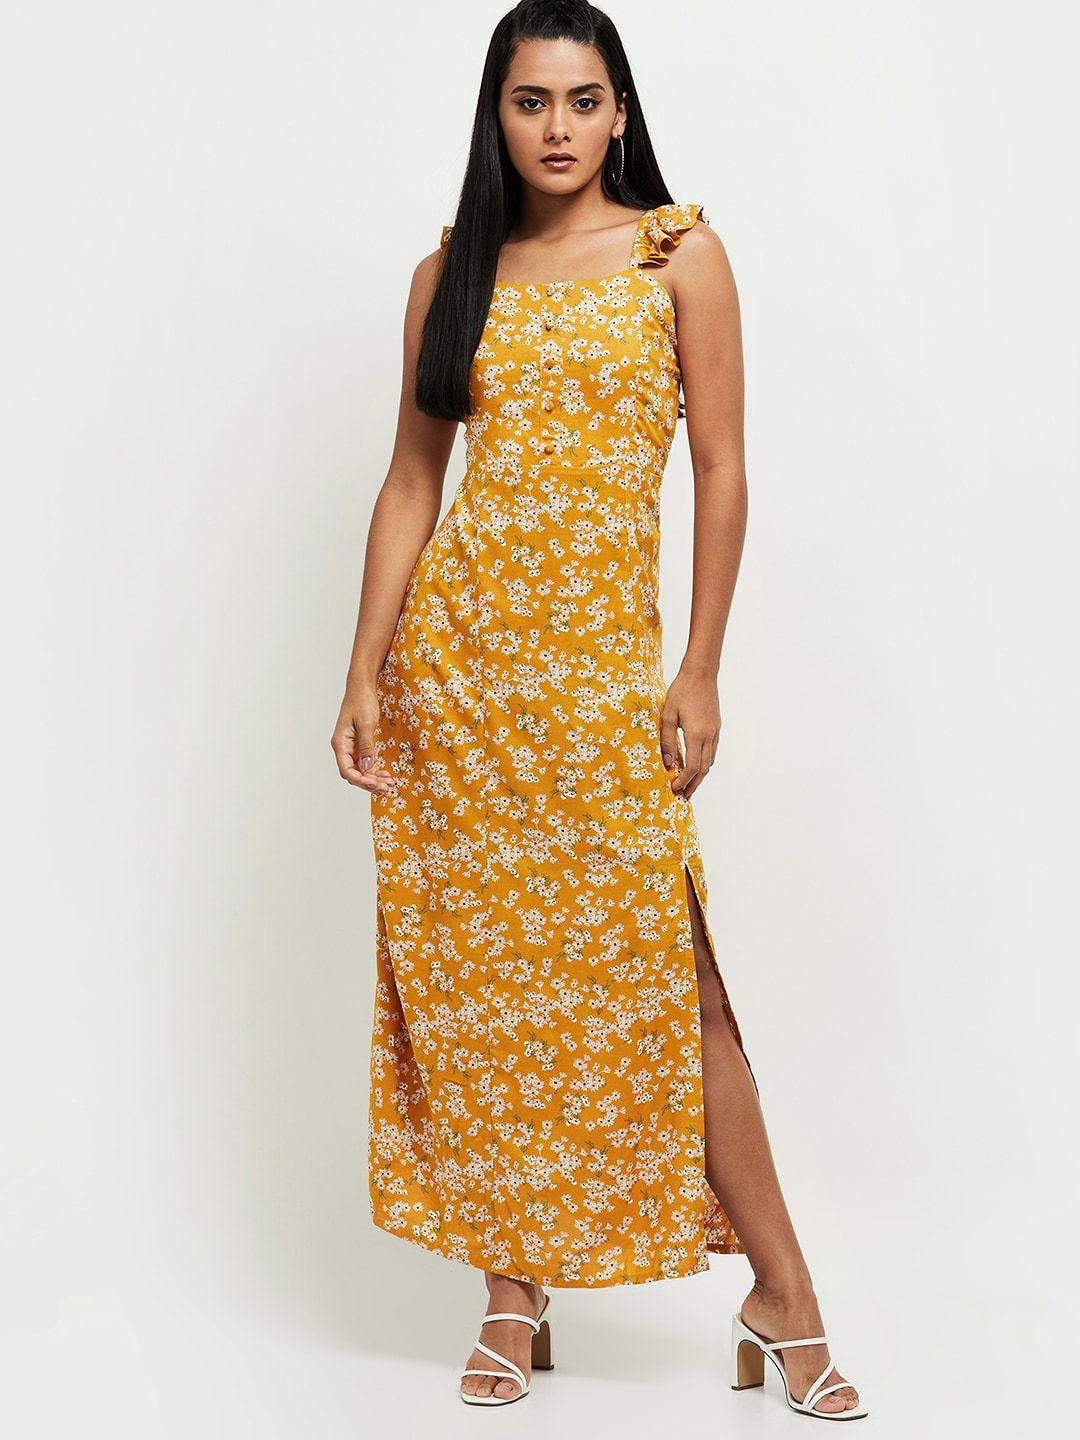 max mustard yellow floral printed maxi dress